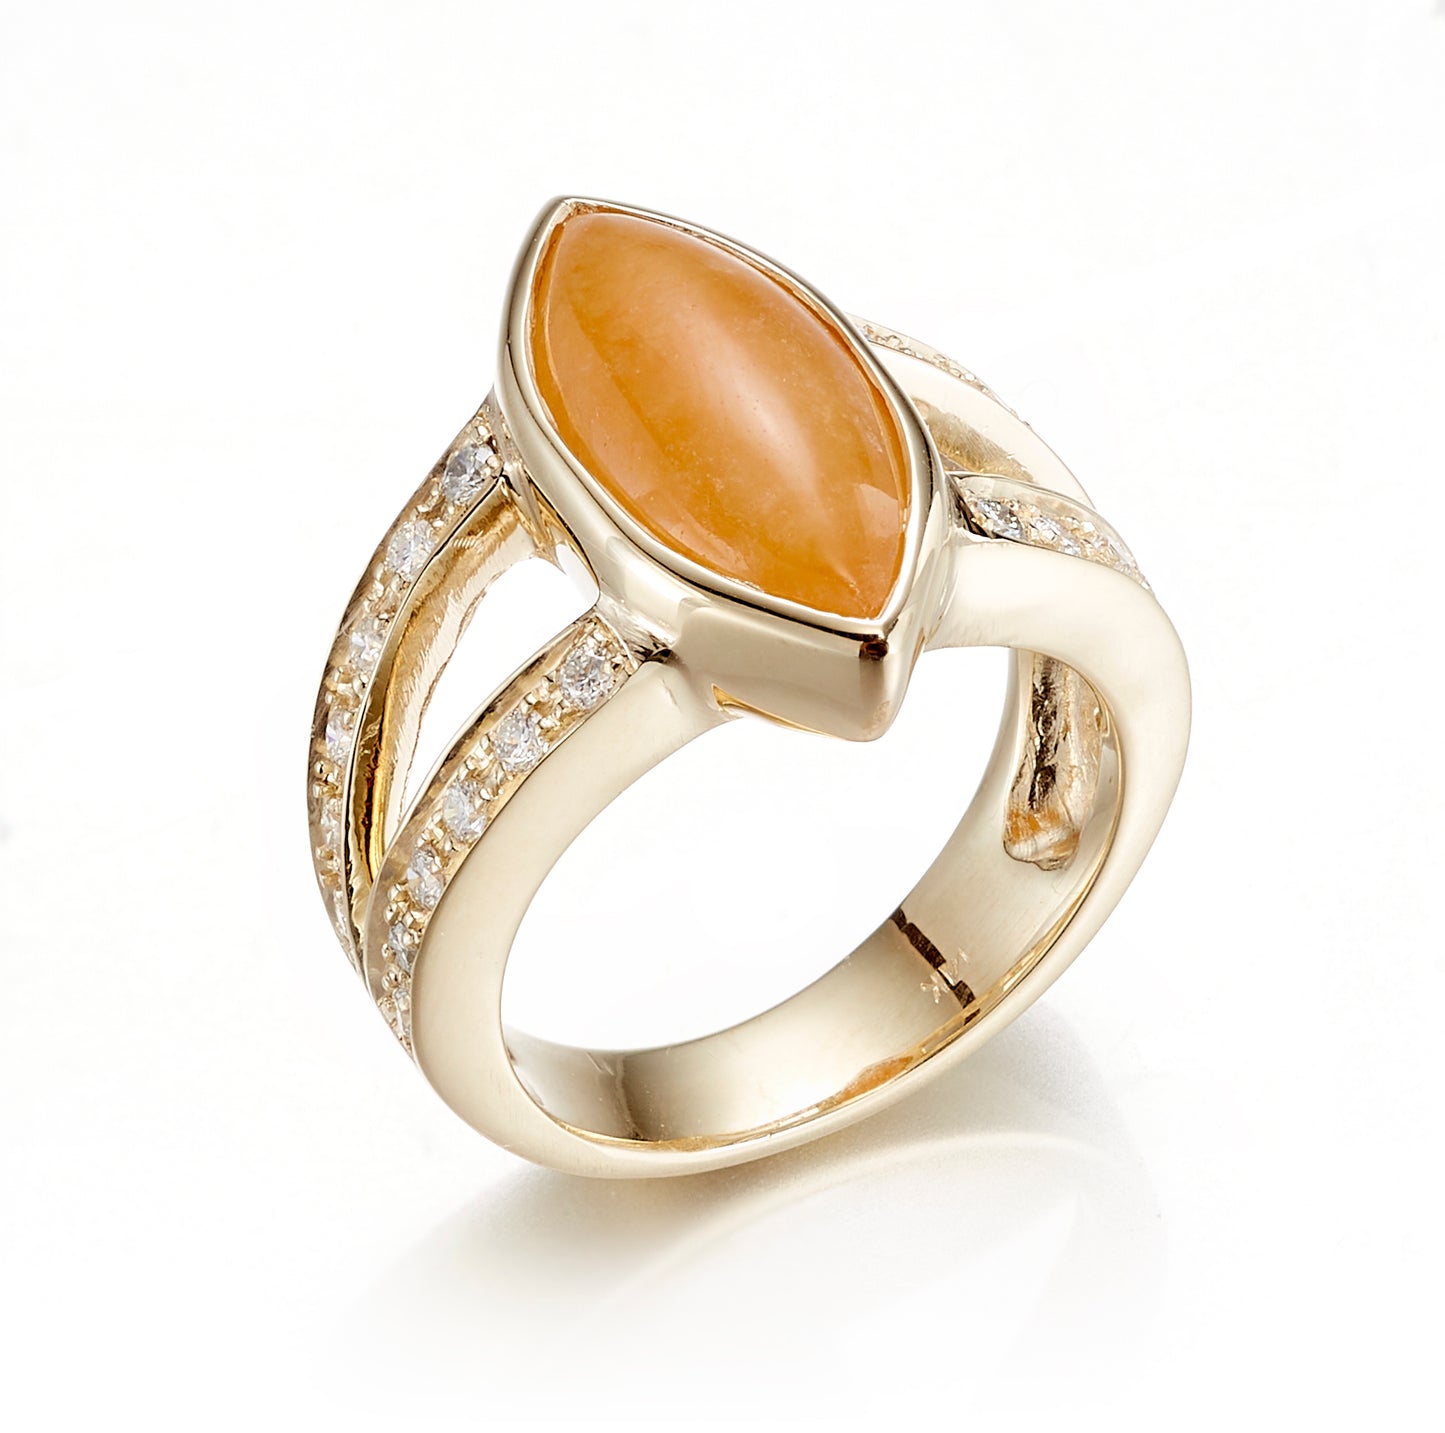 Gump's Signature Orange Jade Cabochon & Diamond Ring